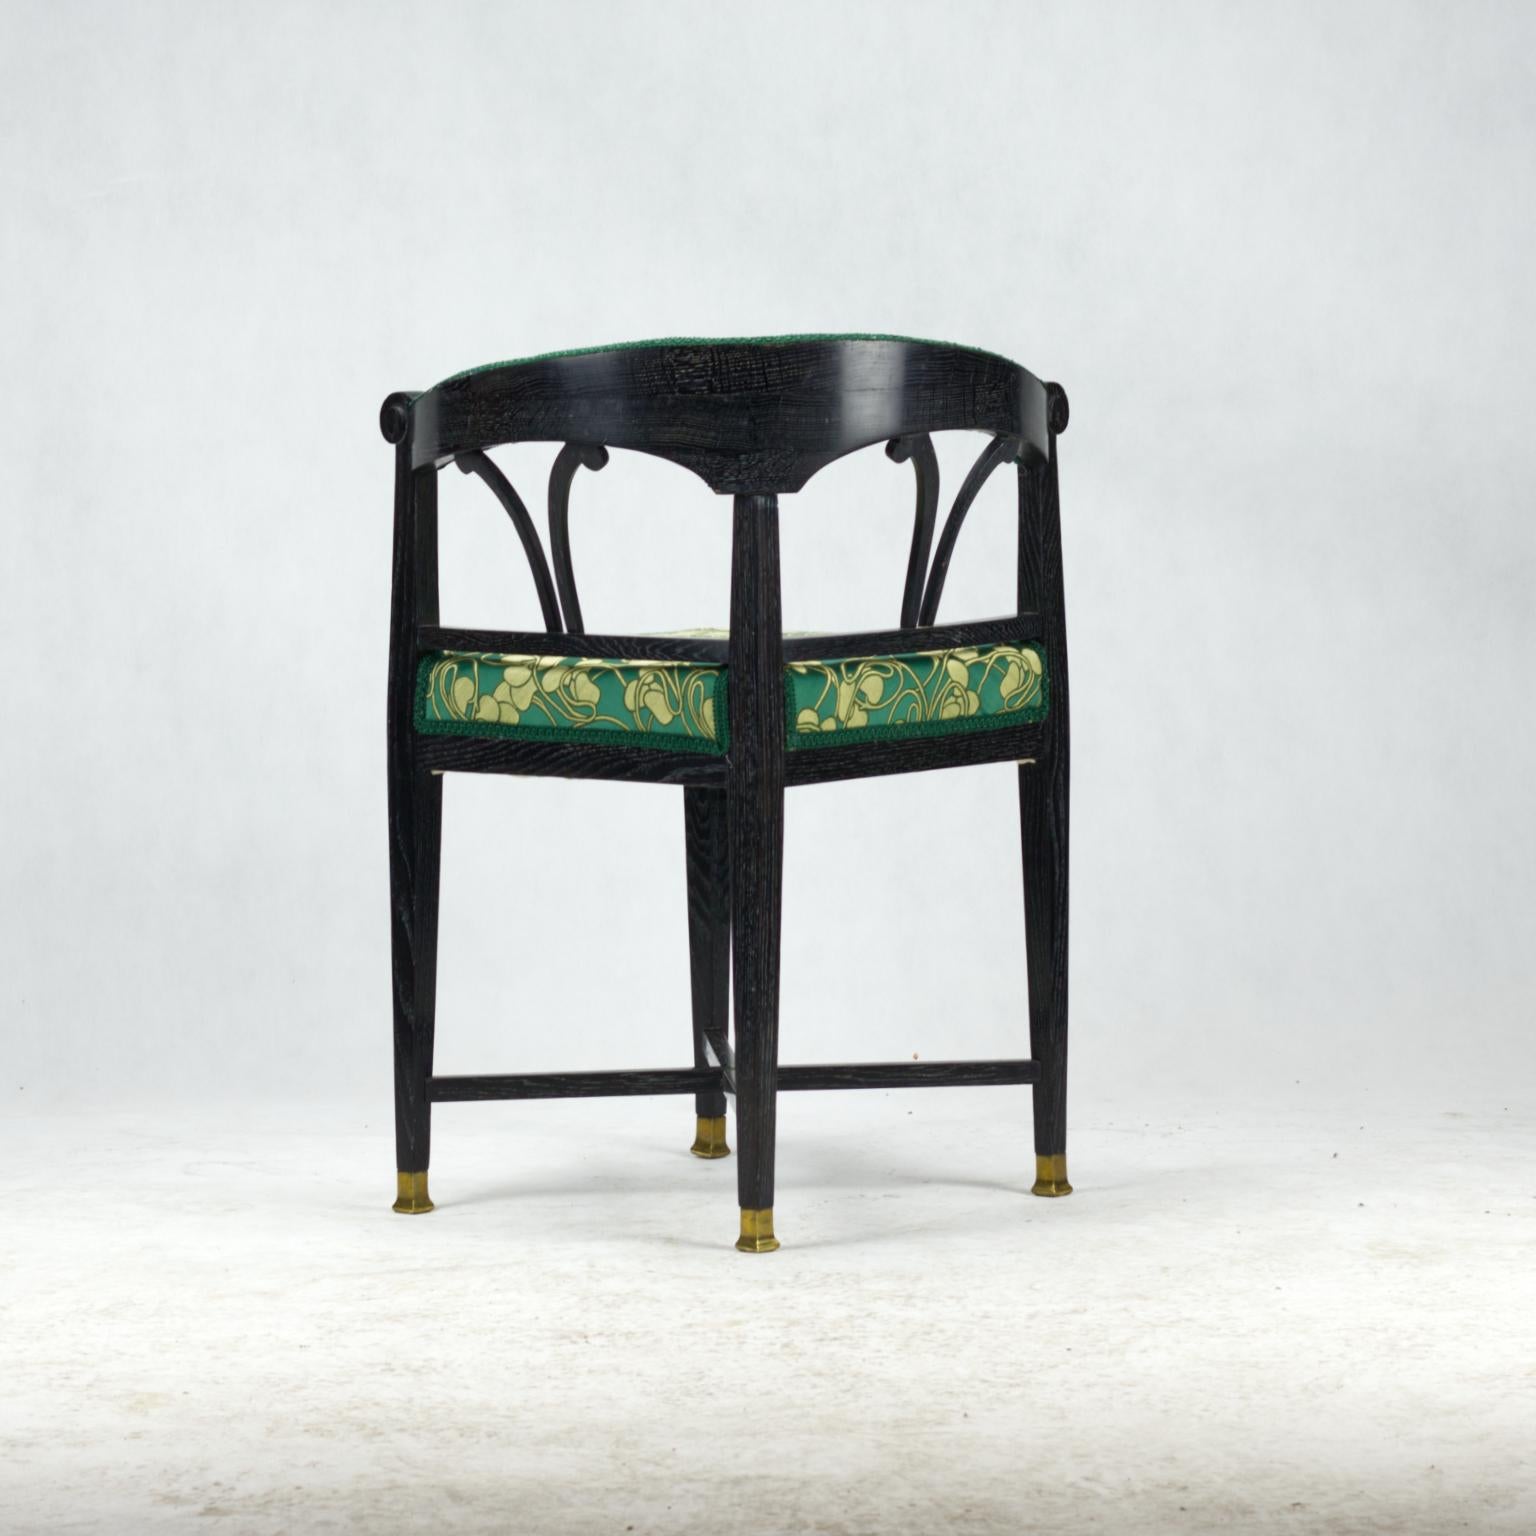 Vienna Secession Art Nouveau Ebonized Corner Chair, circa 1900 For Sale